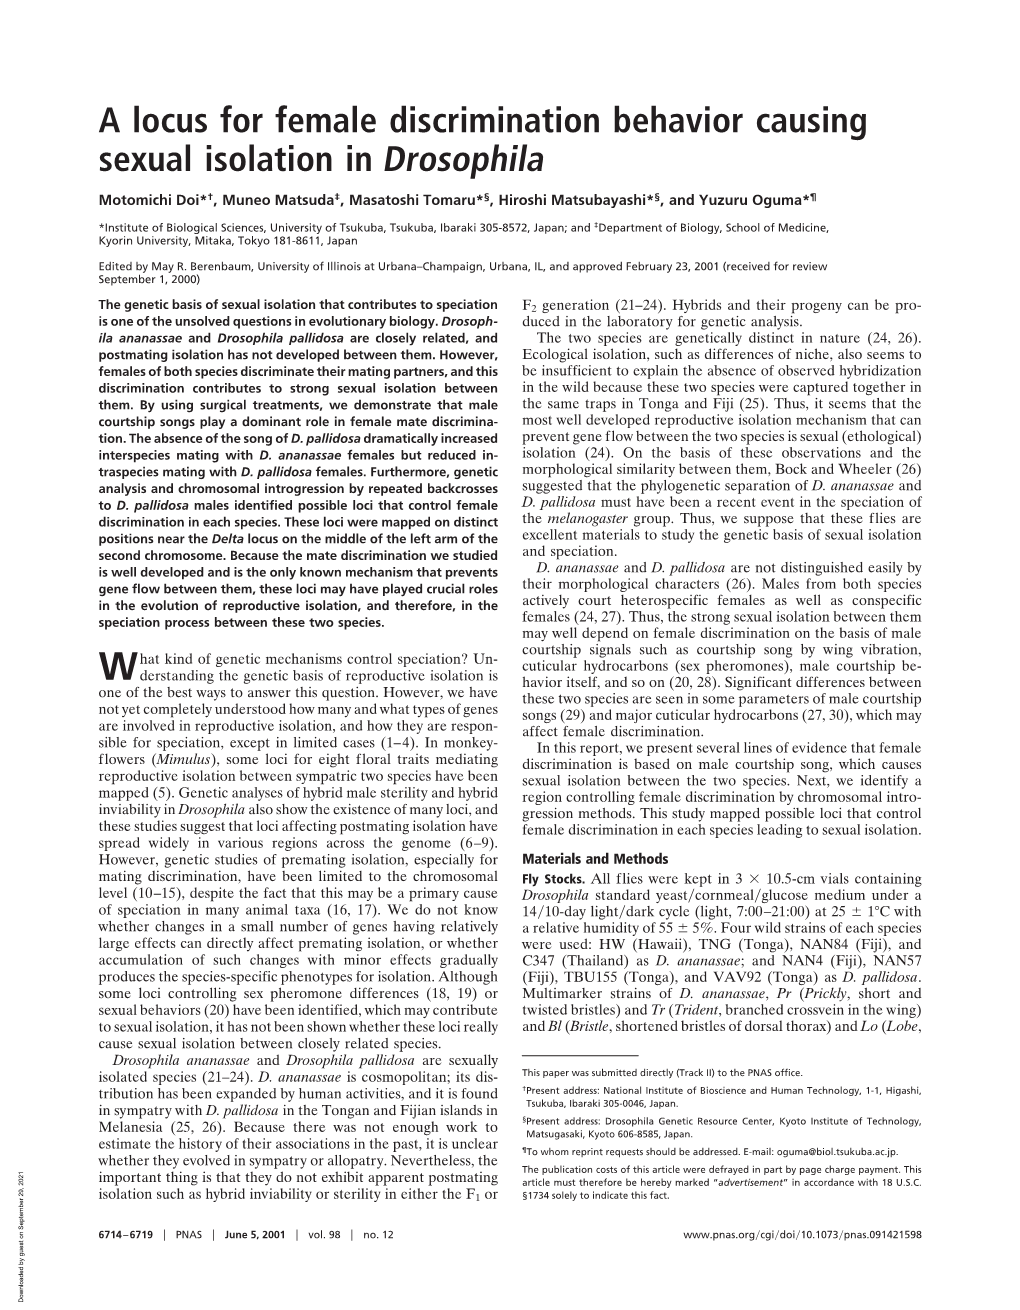 A Locus for Female Discrimination Behavior Causing Sexual Isolation in Drosophila